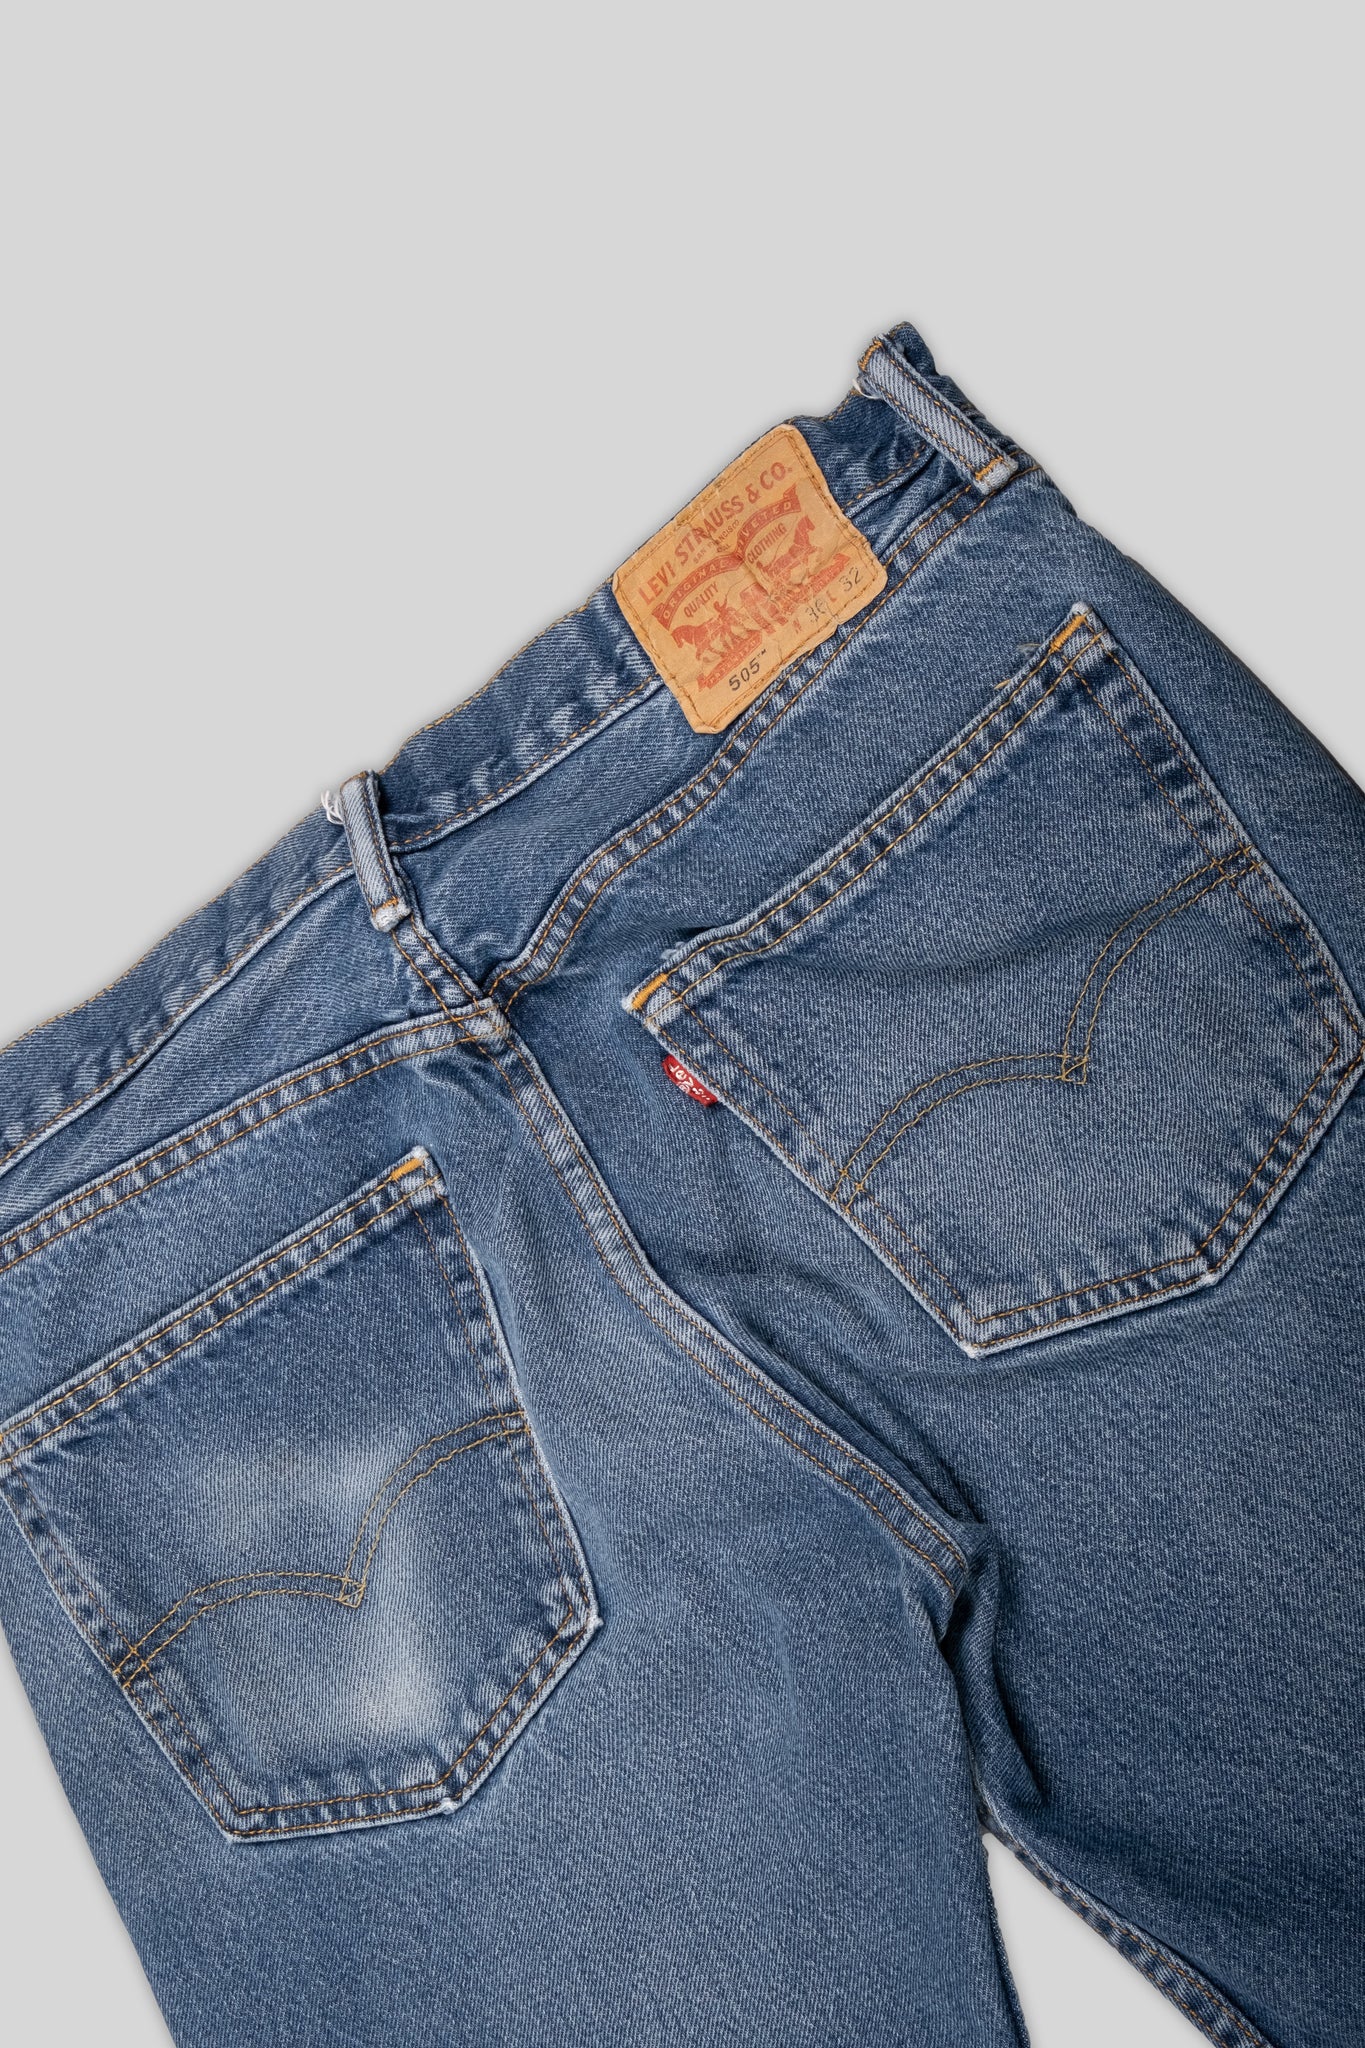 Levis Jeans 505 Worn Denim